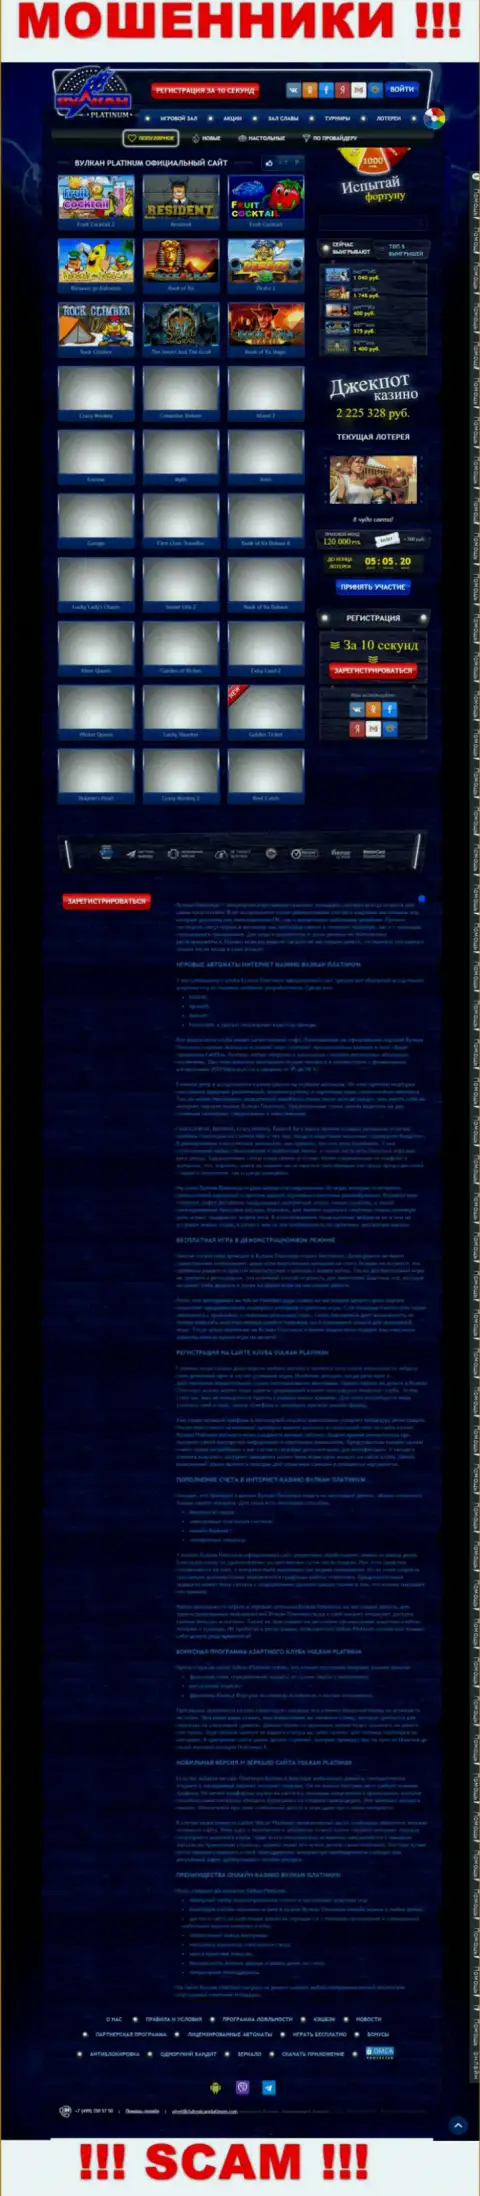 Скрин официального онлайн-ресурса Vulcan Platinum - ClubVulcanPlatinum Com